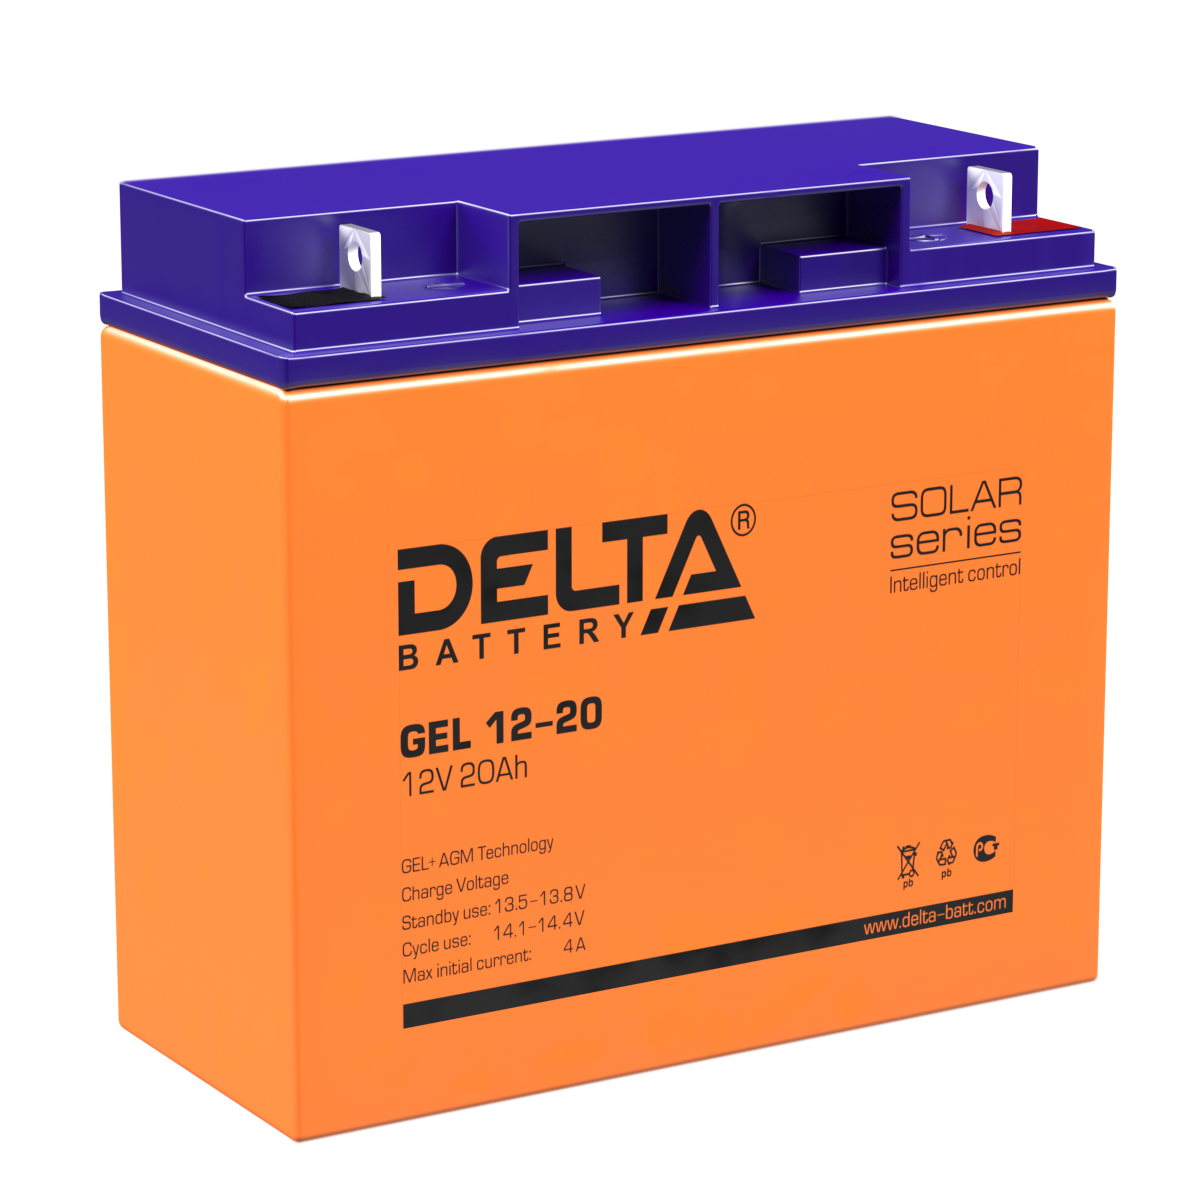 С использованием каких технологий изготавливаются АКБ Delta: DTM 1207 12В 7Ач и модели 12Ач, 40Ач, также другие модели АКБ этой компании Где и как как узнать дату производства аккумуляторных батарей Delta Читайте статью, и вы будете в курсе всего вышепере